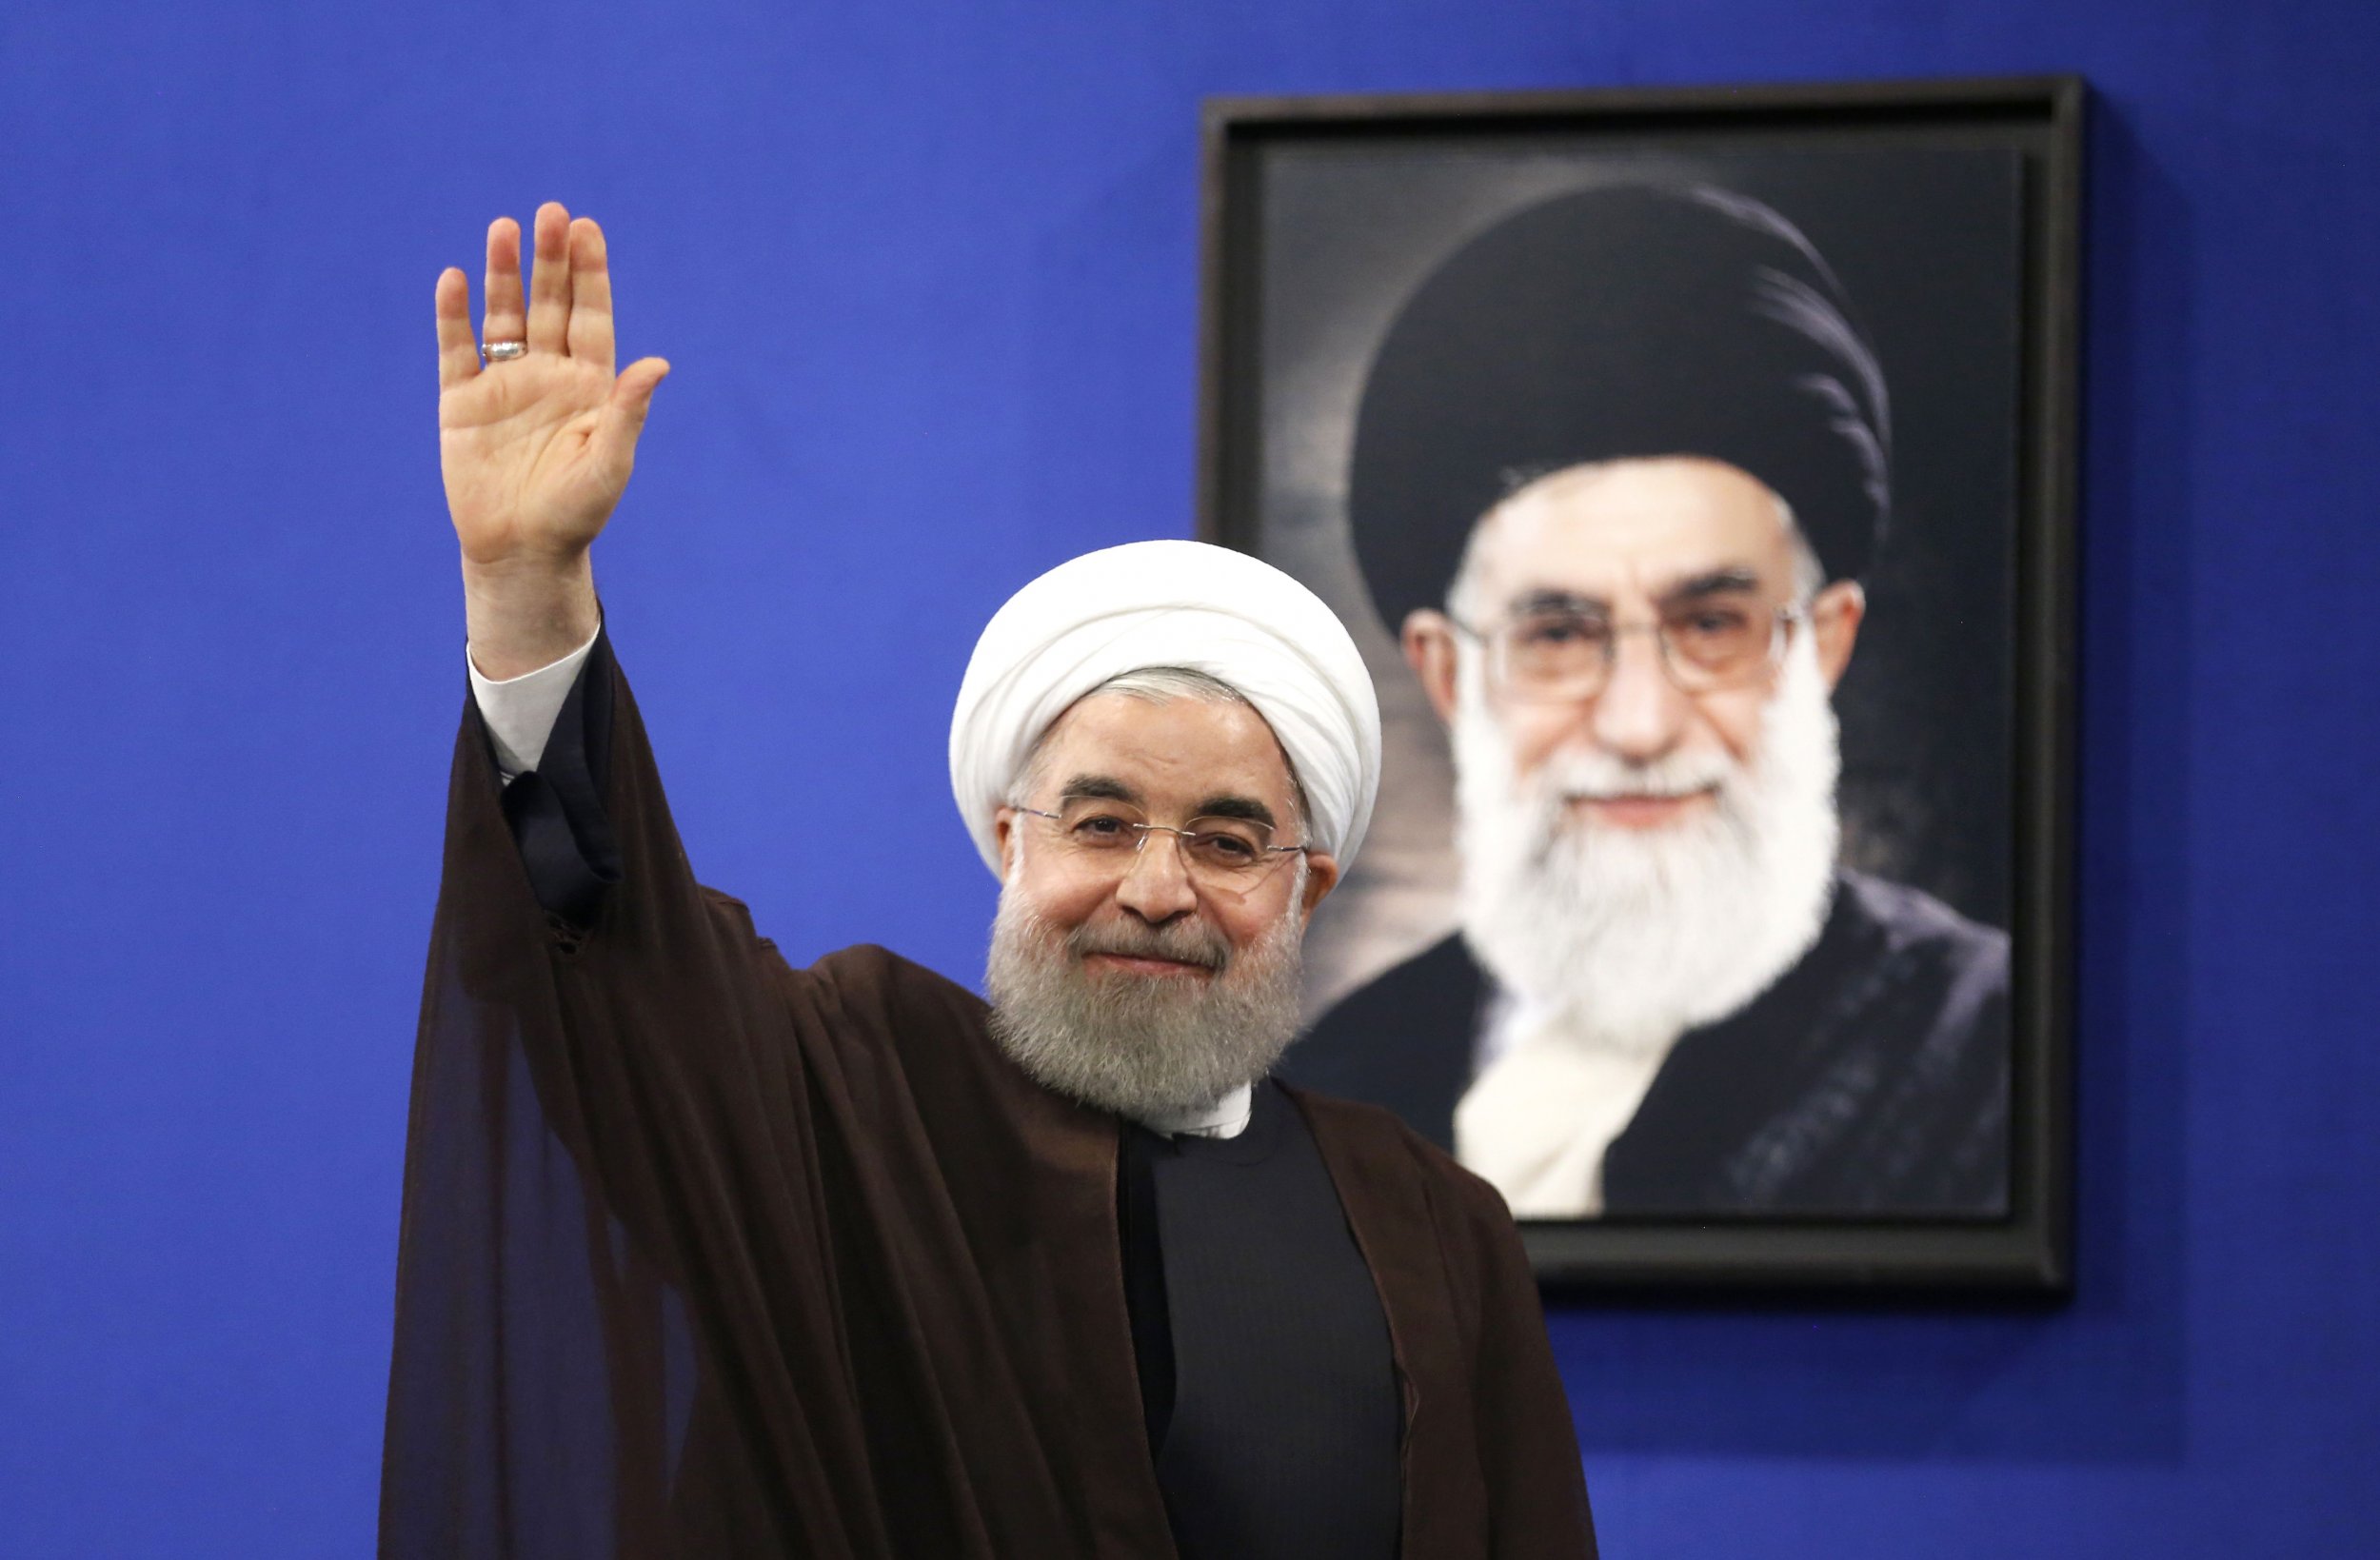 05_25_Iran_Rouhani_01